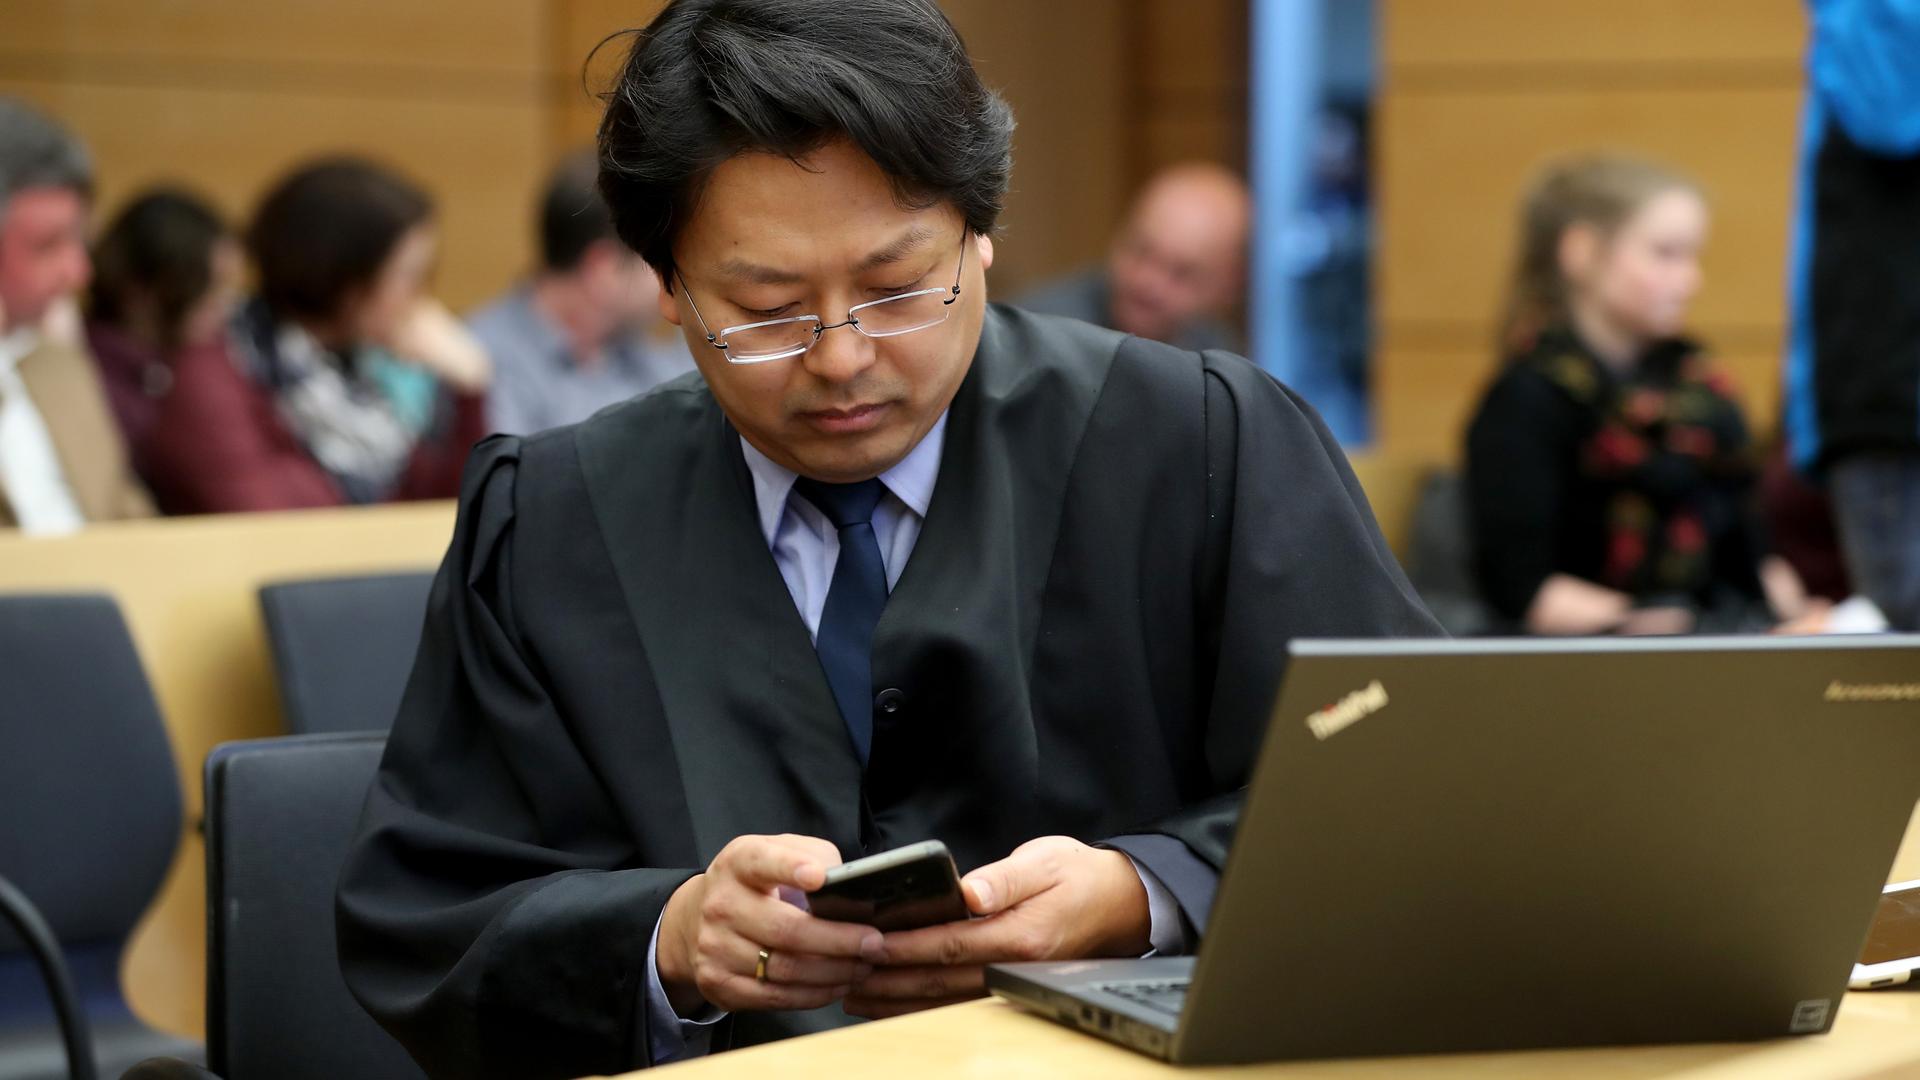 Jun Chan-jo sitzt in seiner Anwaltsrobe im Gerichtssaal und schaut auf sein Smartphone.